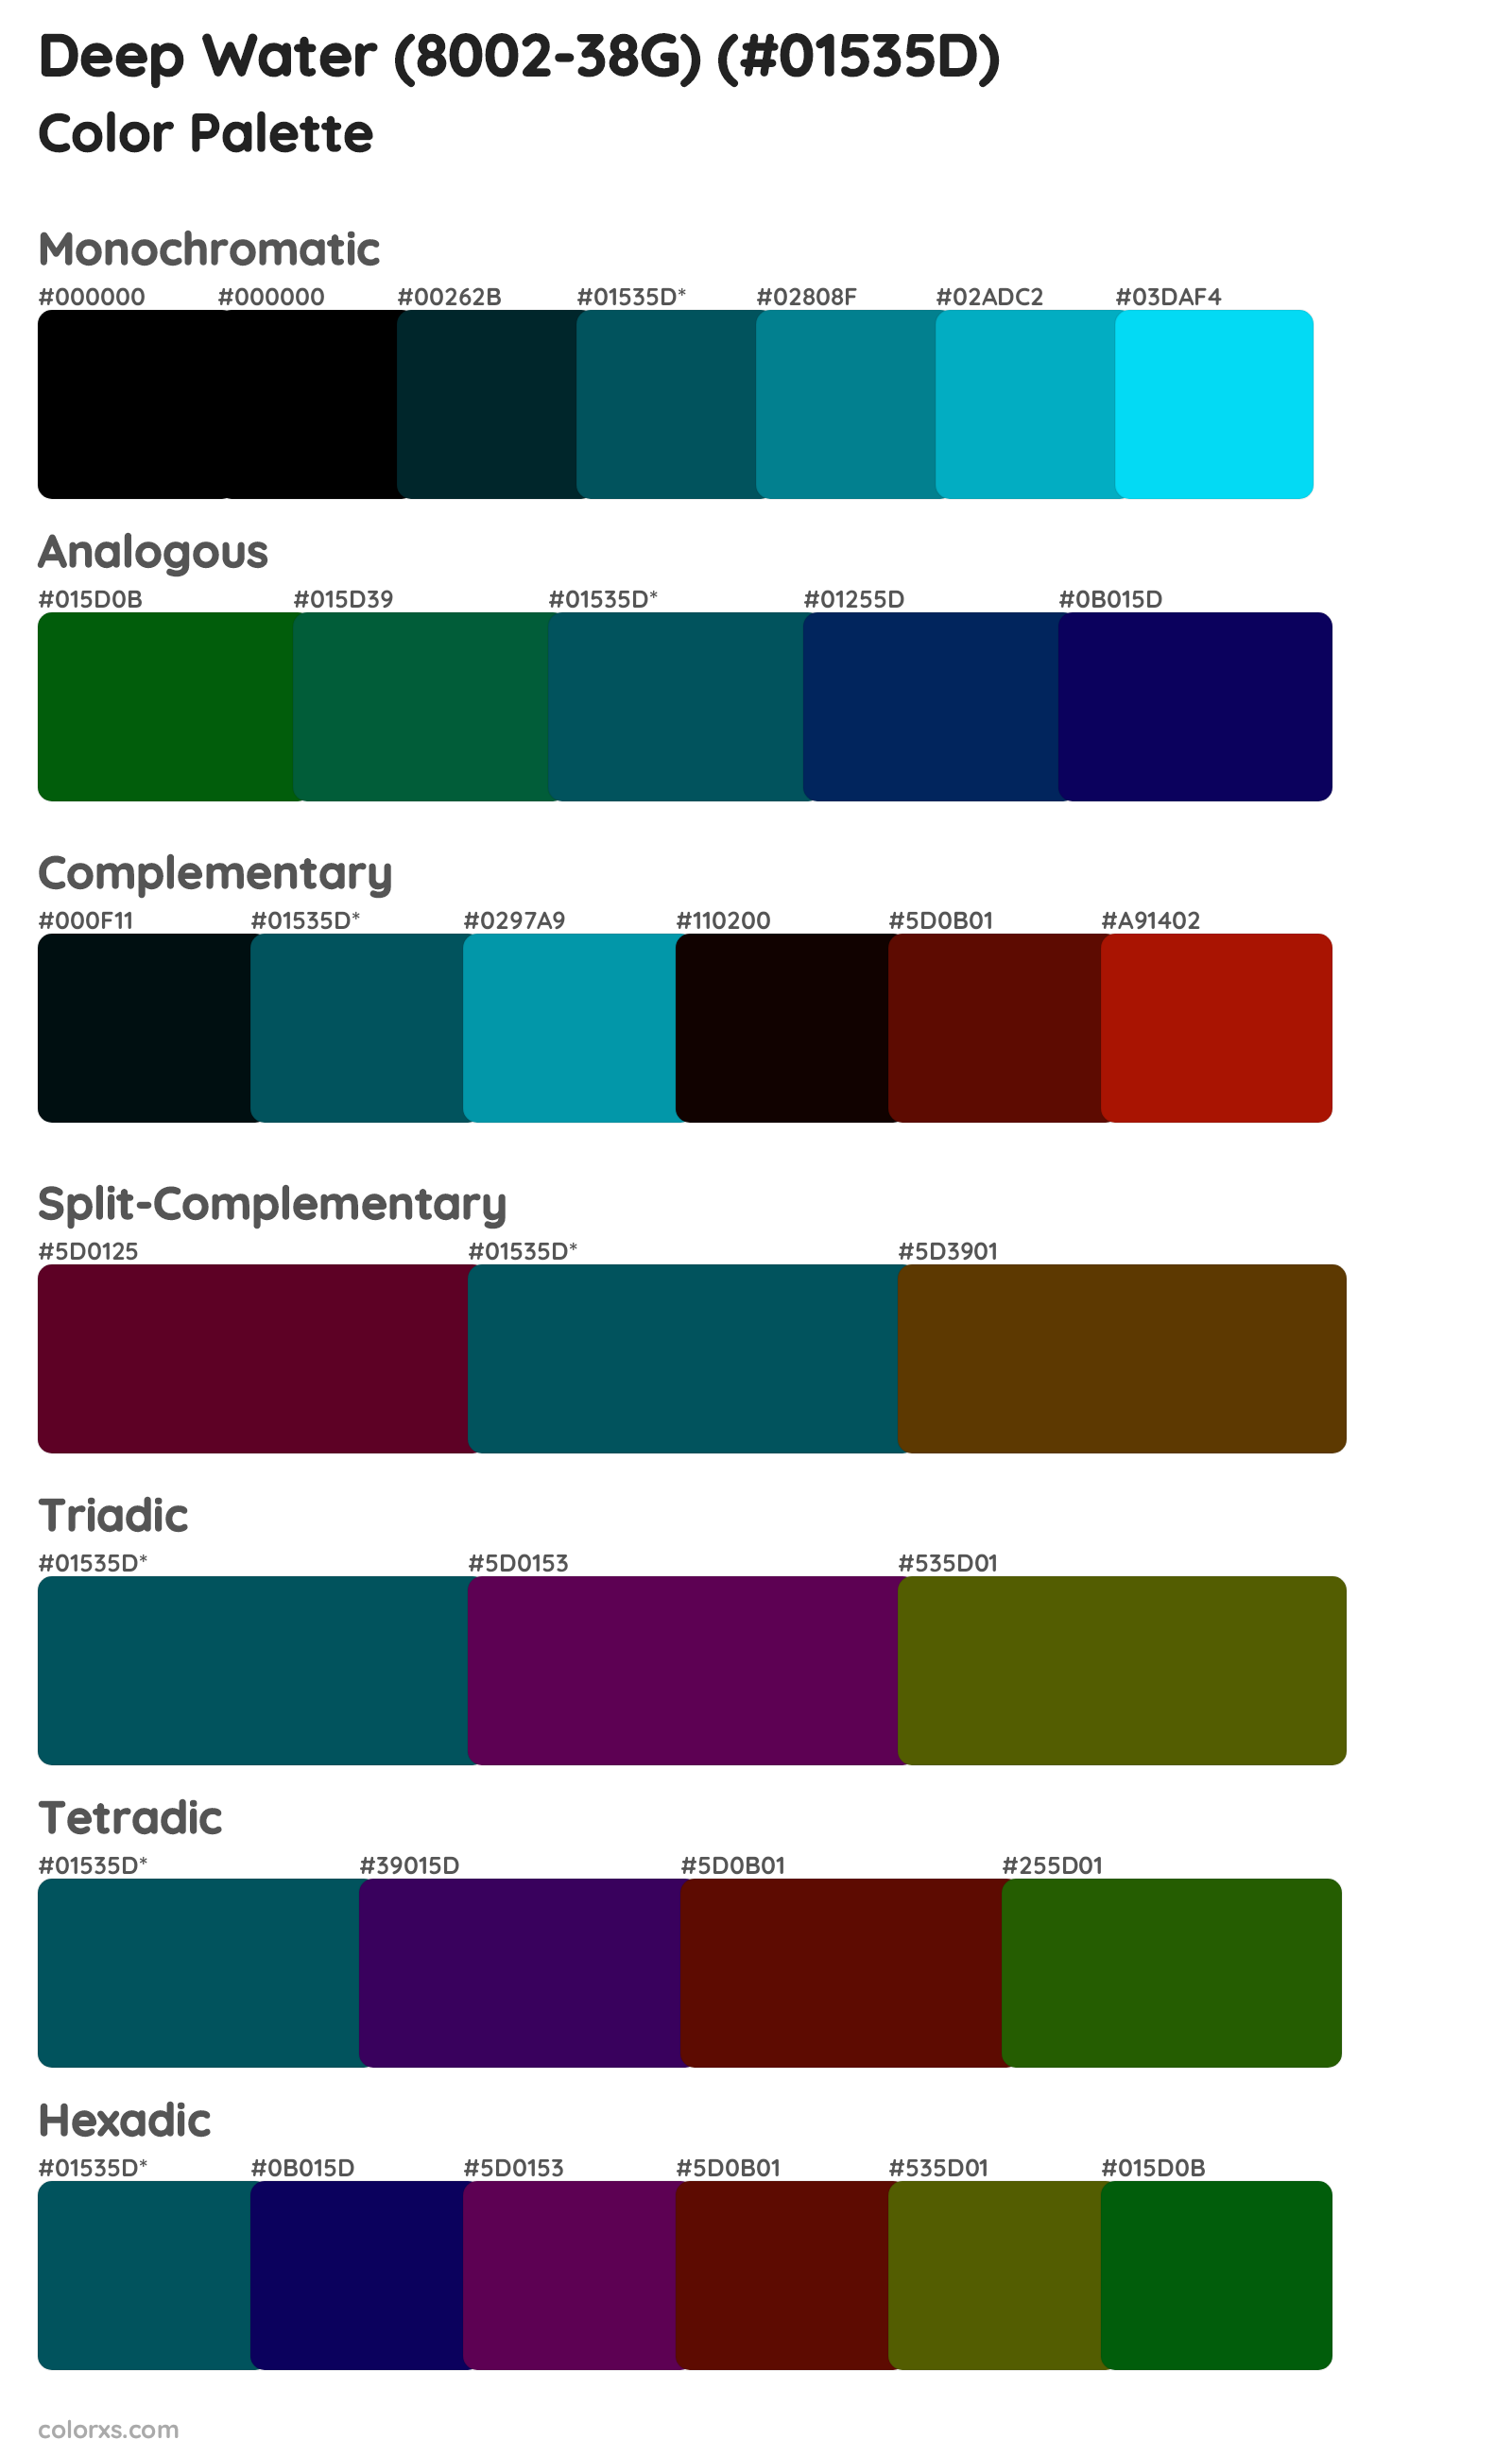 Deep Water (8002-38G) Color Scheme Palettes